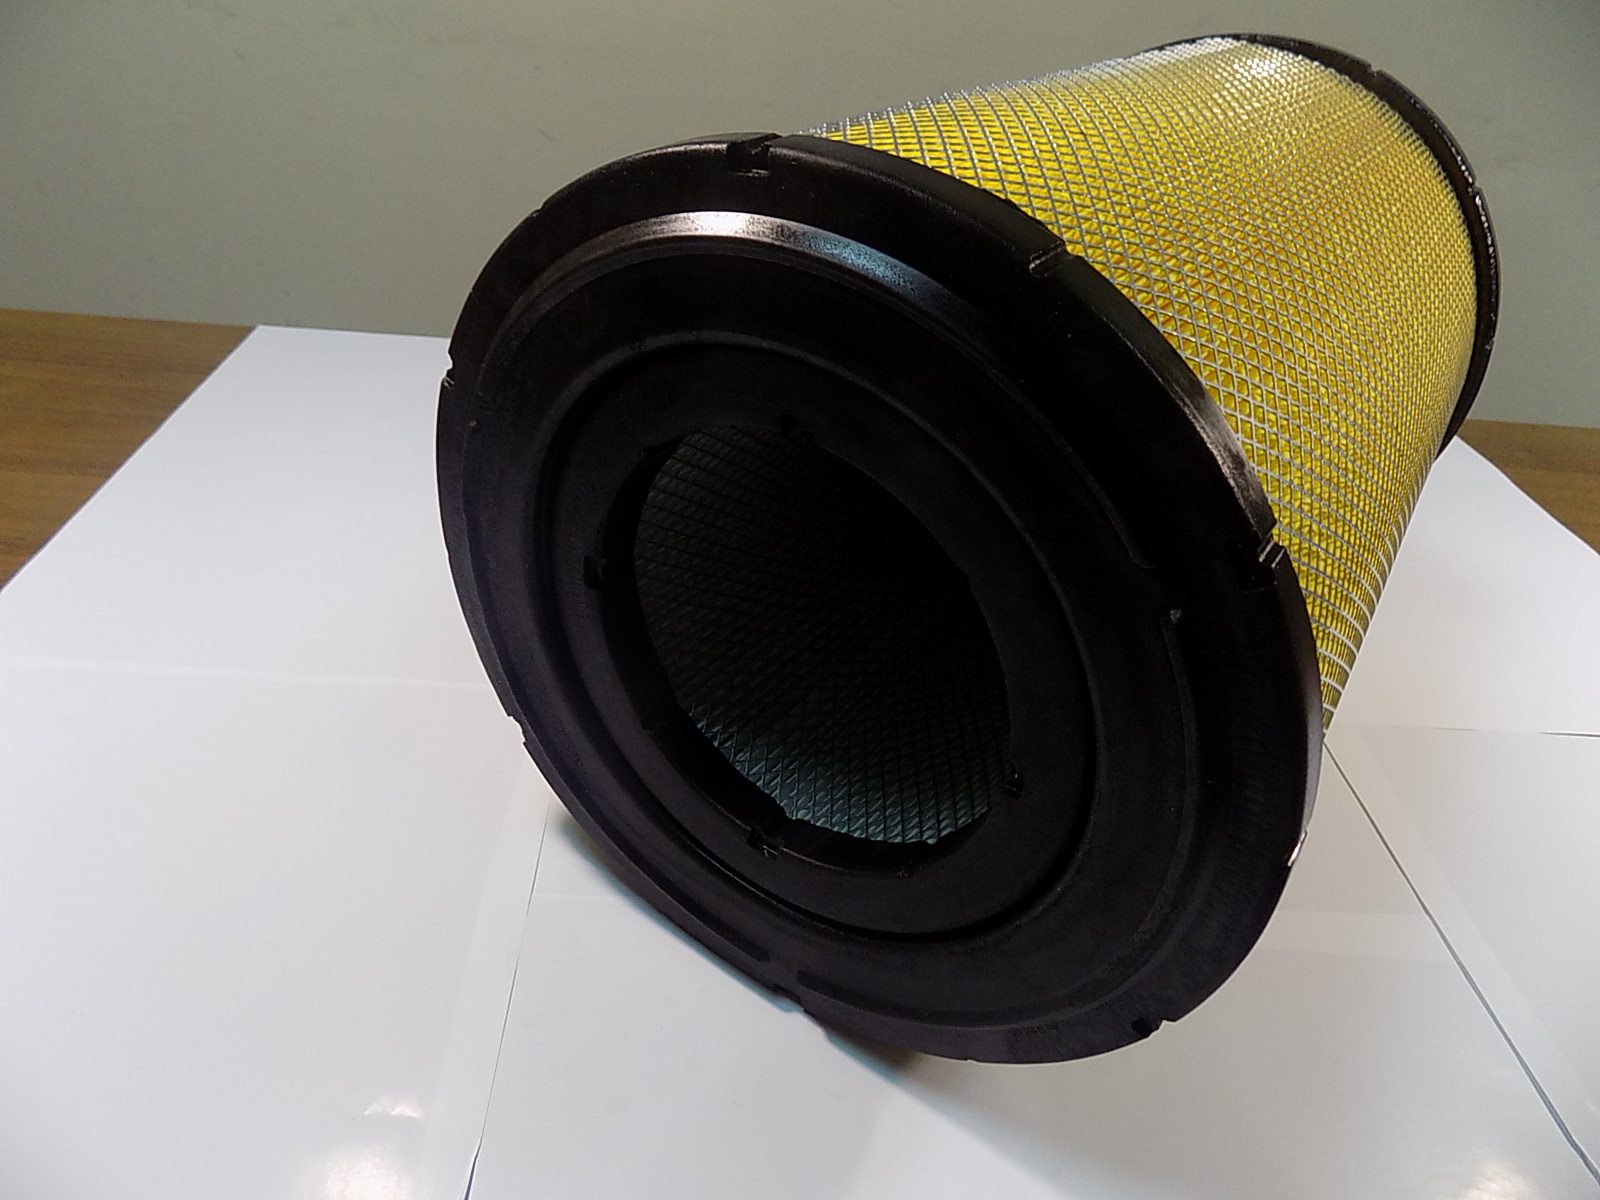 Фильтр воздушный двойной цилиндрический (глухой торец) TDW 562 12VTE (Ф1-315х218х480/Ф2-195х155х440 мм)/Air filter